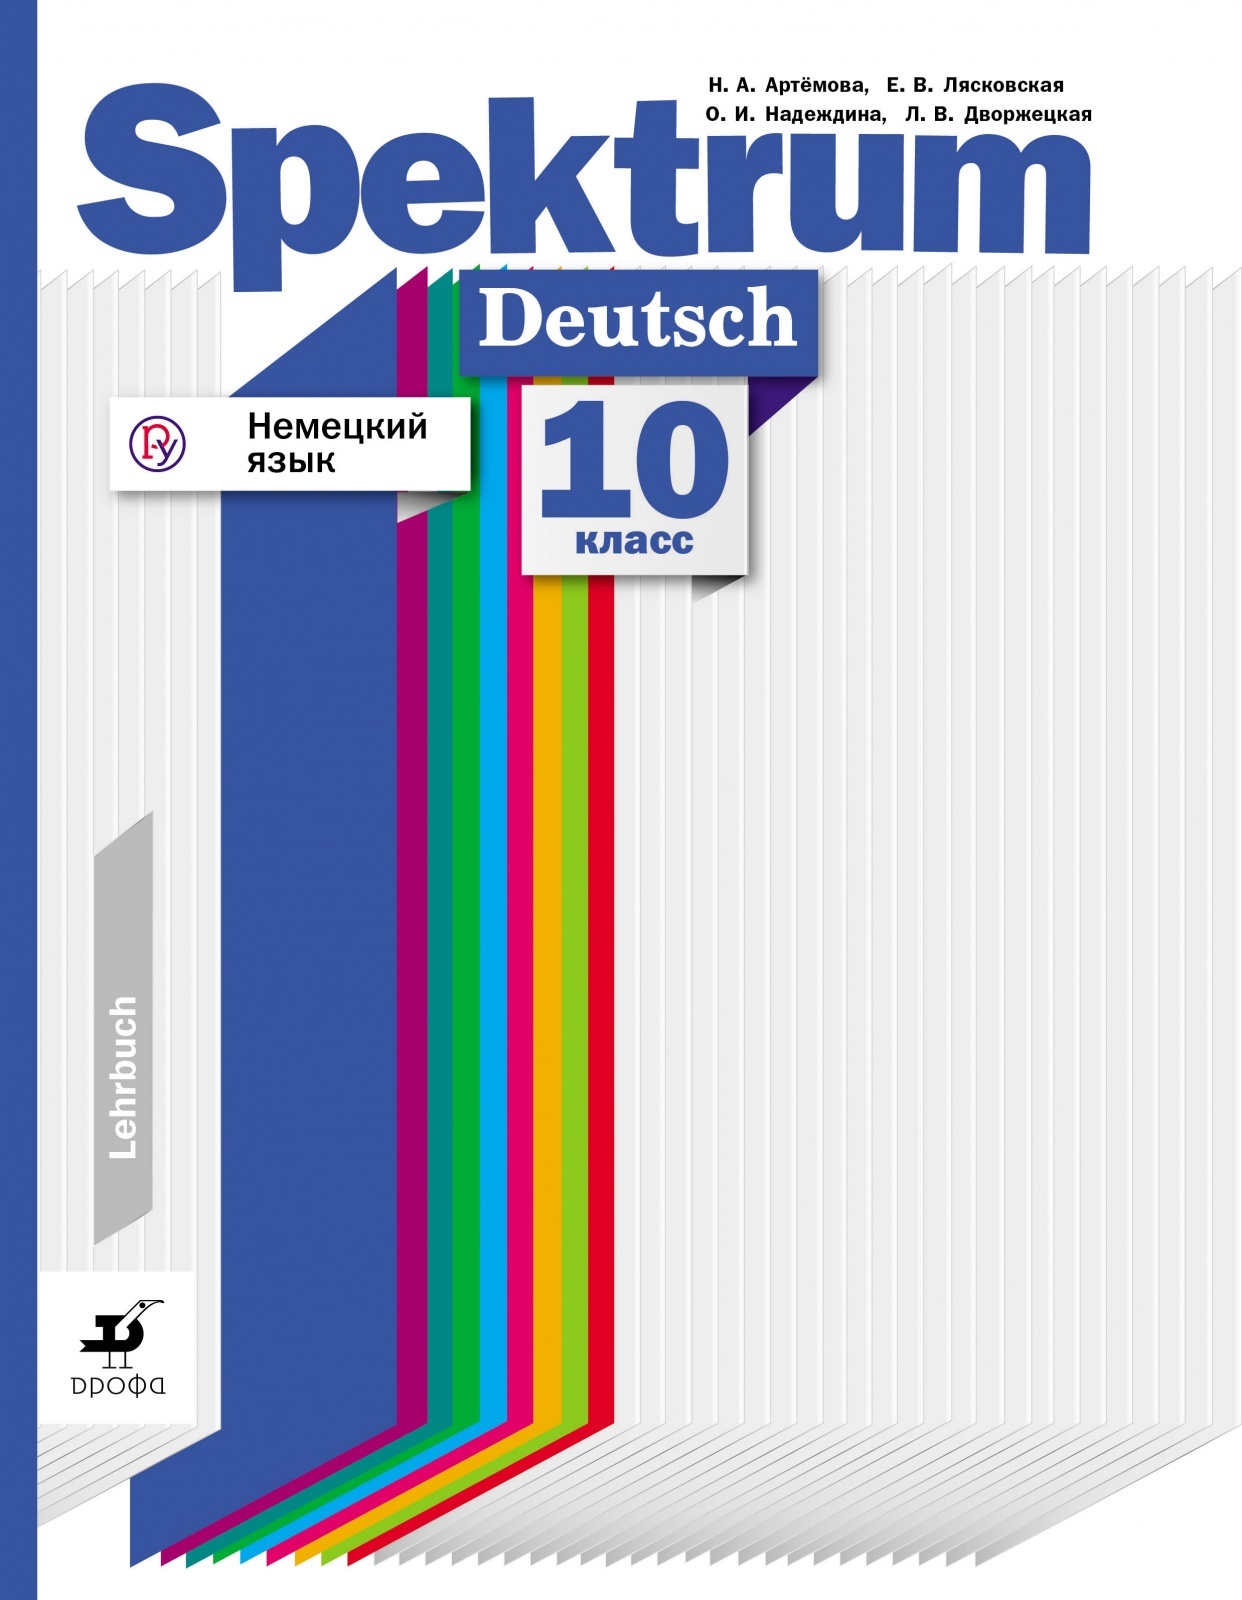 Спектрум учебник немецкого. Spektrum учебник. Артемова немецкий язык 10 класс. Спектрум немецкий язык. Учебник Spektrum Deutsch.